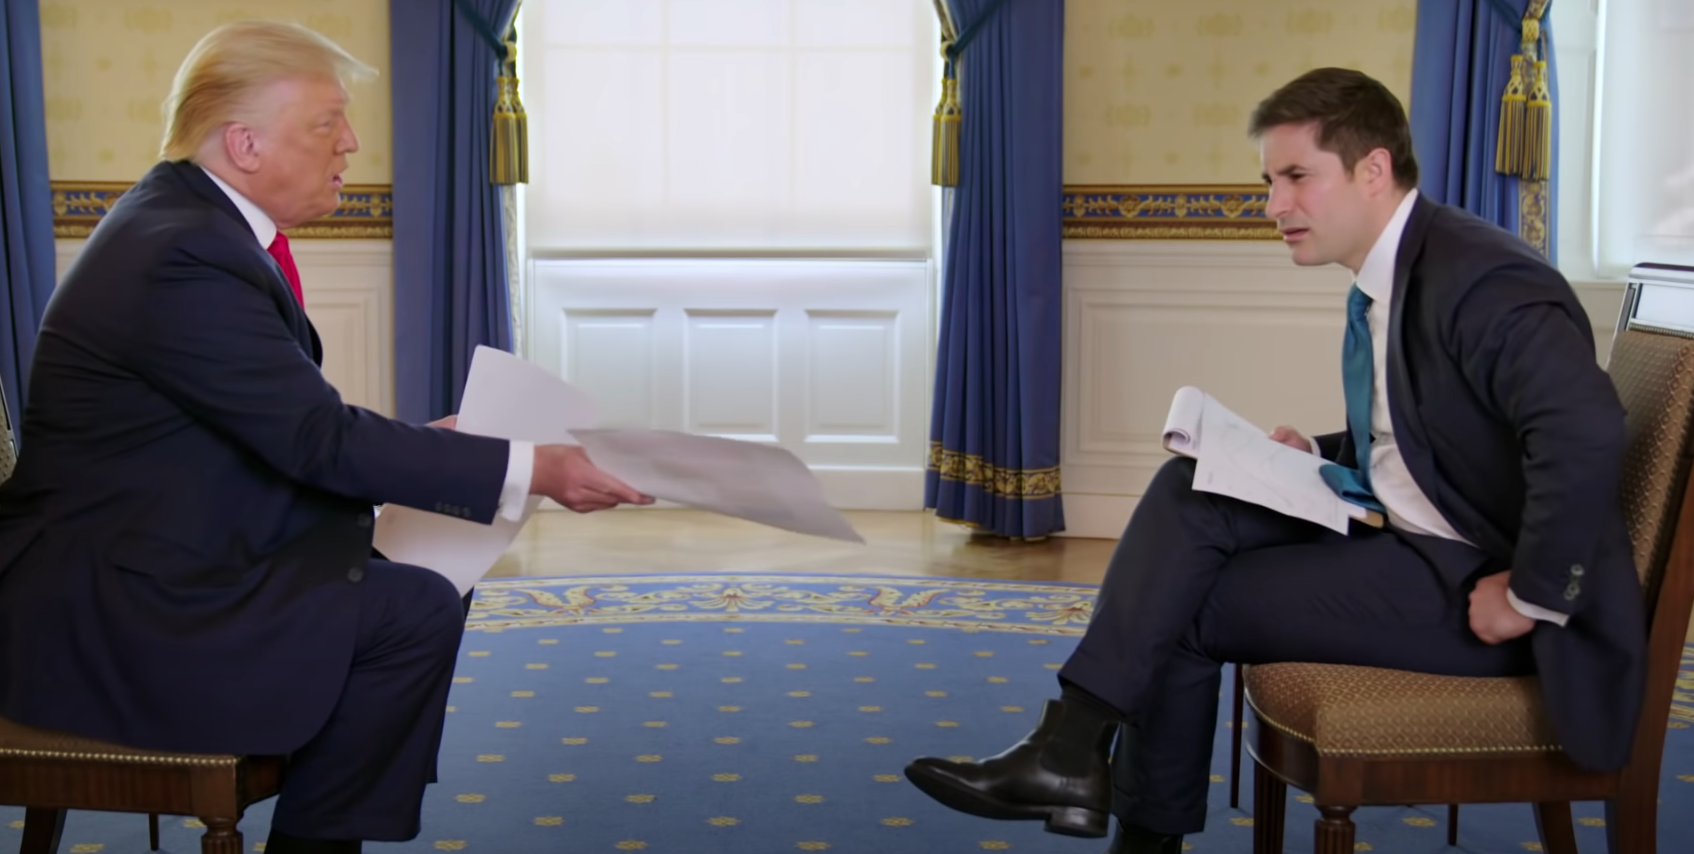 President Donald Trump laat grafieken met coronacijfers zien aan Axios-journalist Jonathan Swan tijdens een veelbesproken interview op 3 augustus 2020. Foto: Axios/HBO